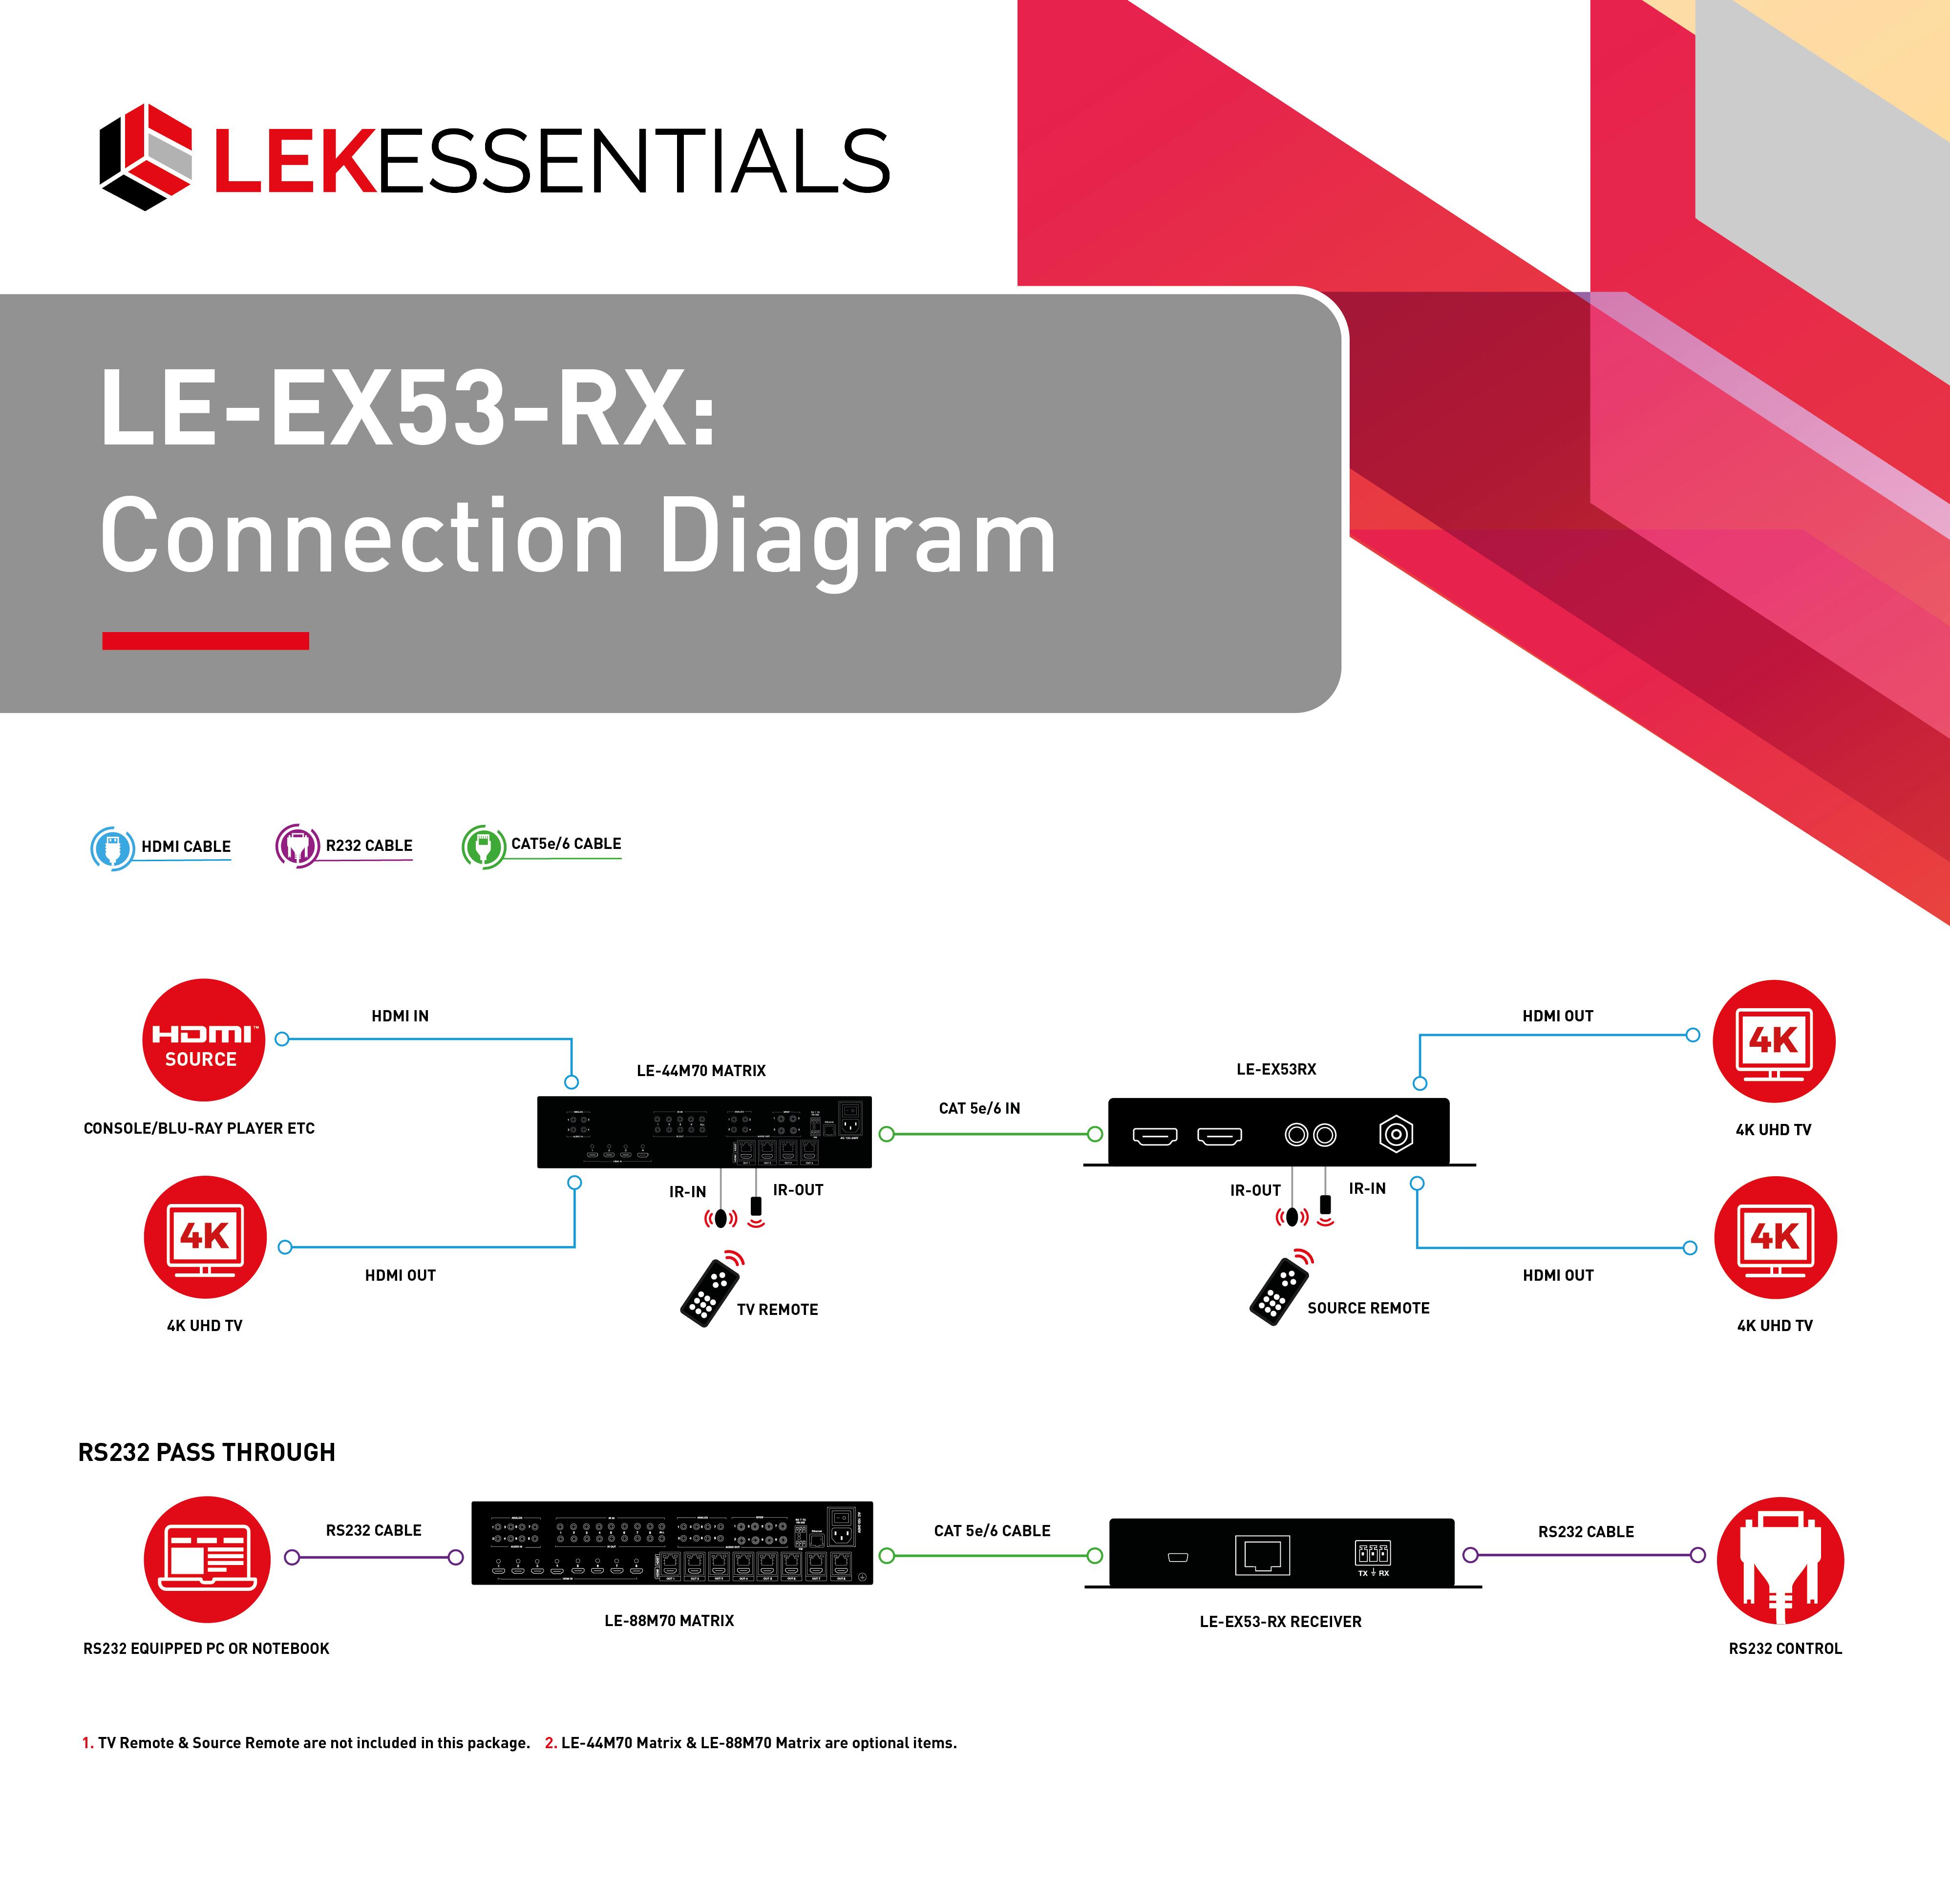 LE-EX53-RX Connection Diagram